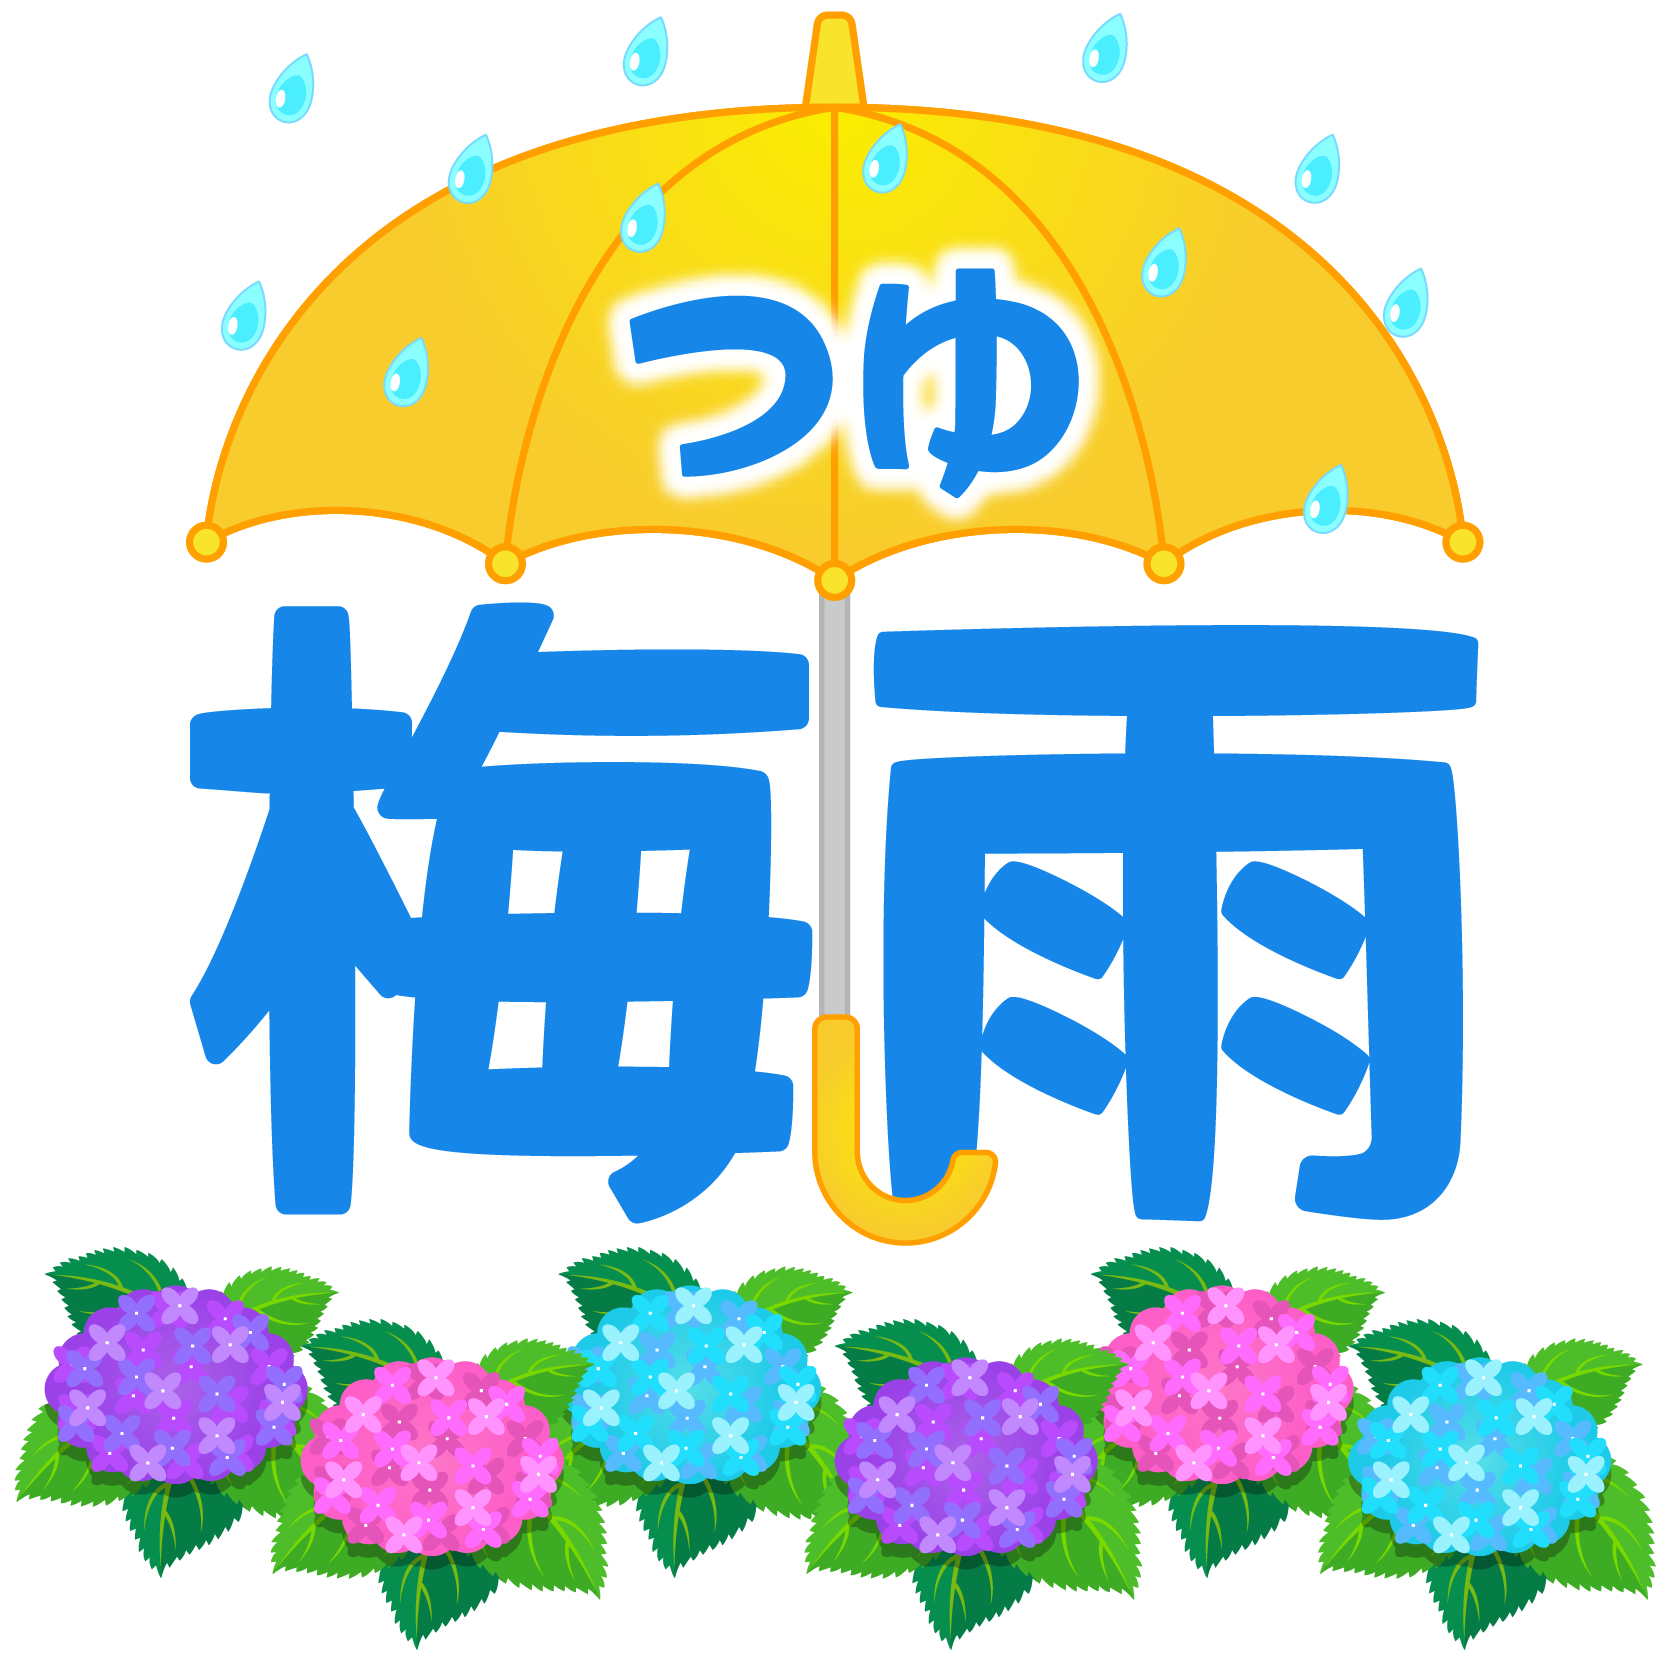 商用フリー 無料イラスト 6月梅雨 つゆ の文字 Tsuyu Baiu003 商用ok フリー素材集 ナイスなイラスト